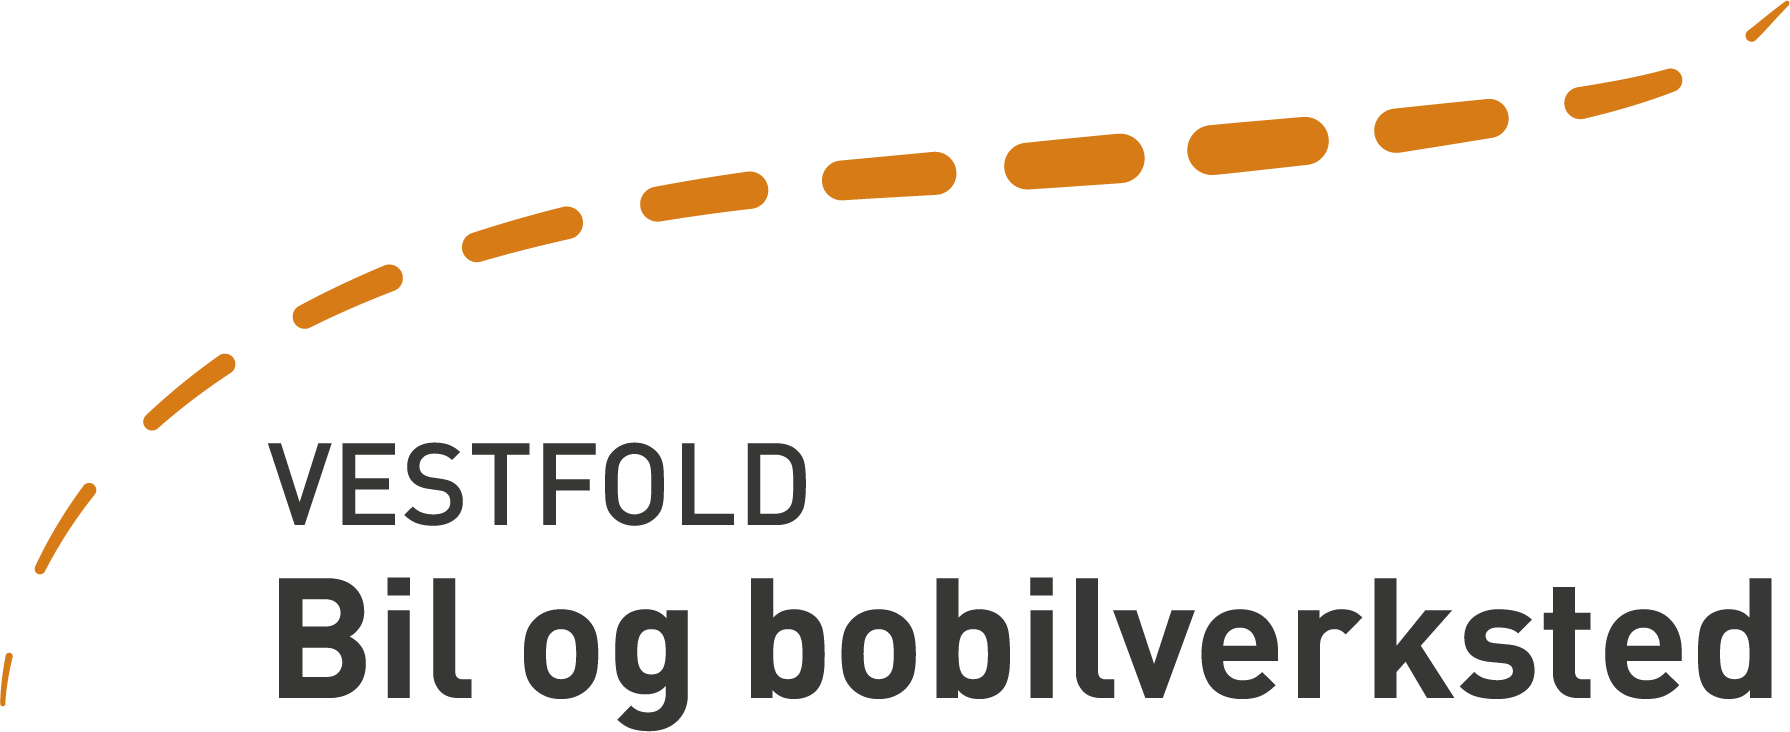 Vestfold Bil og bobilverksted logo